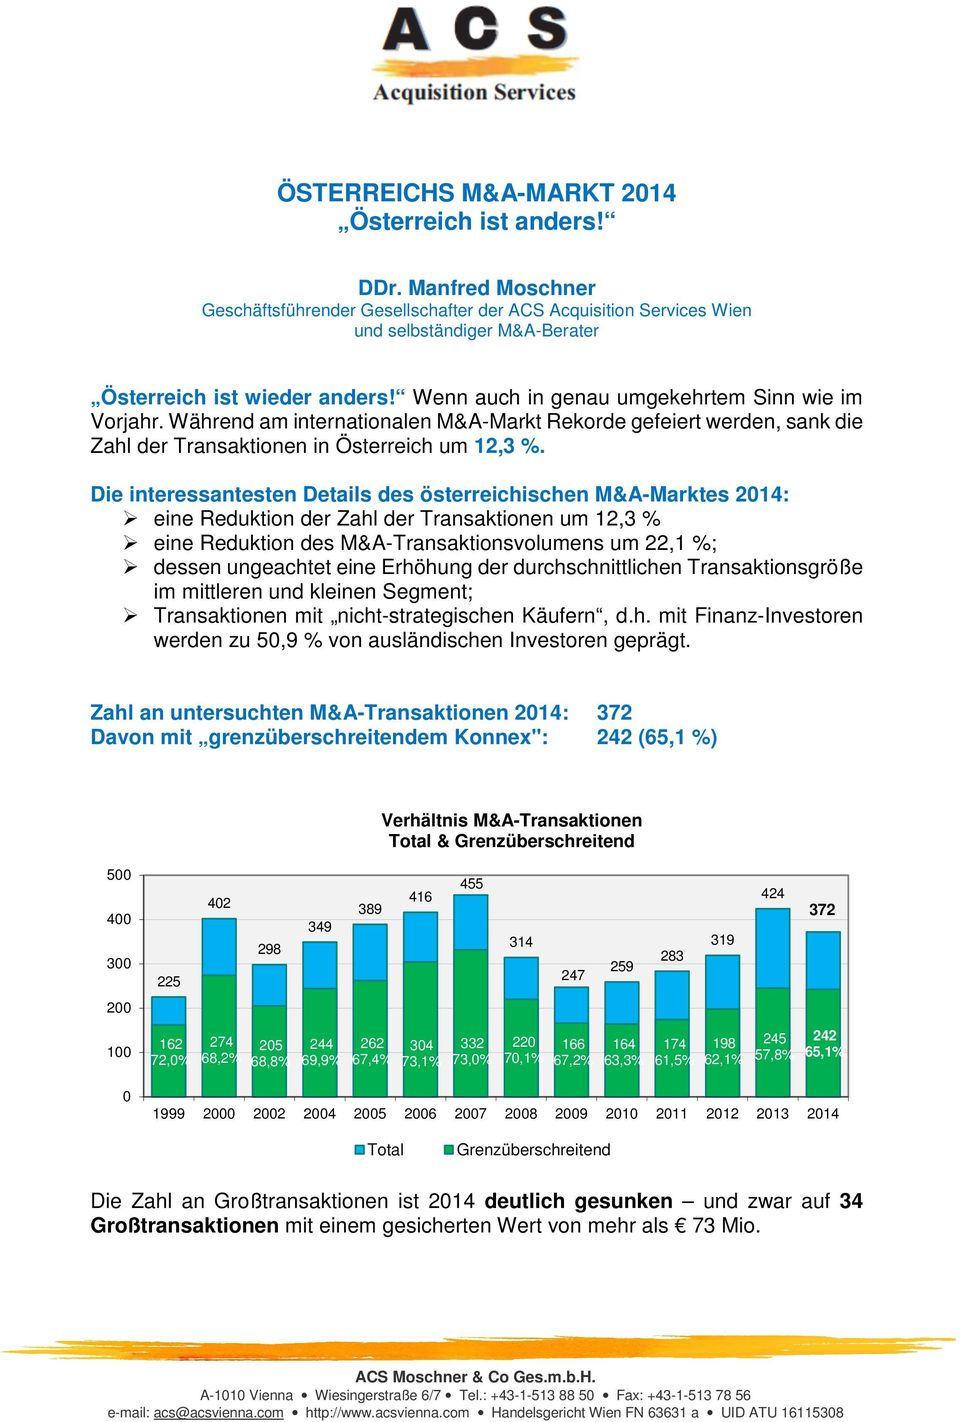 Die interessantesten Details des österreichischen M&A-Marktes 214: eine Reduktion der Zahl der Transaktionen um 12,3 % eine Reduktion des M&A-Transaktionsvolumens um 22,1 %; dessen ungeachtet eine